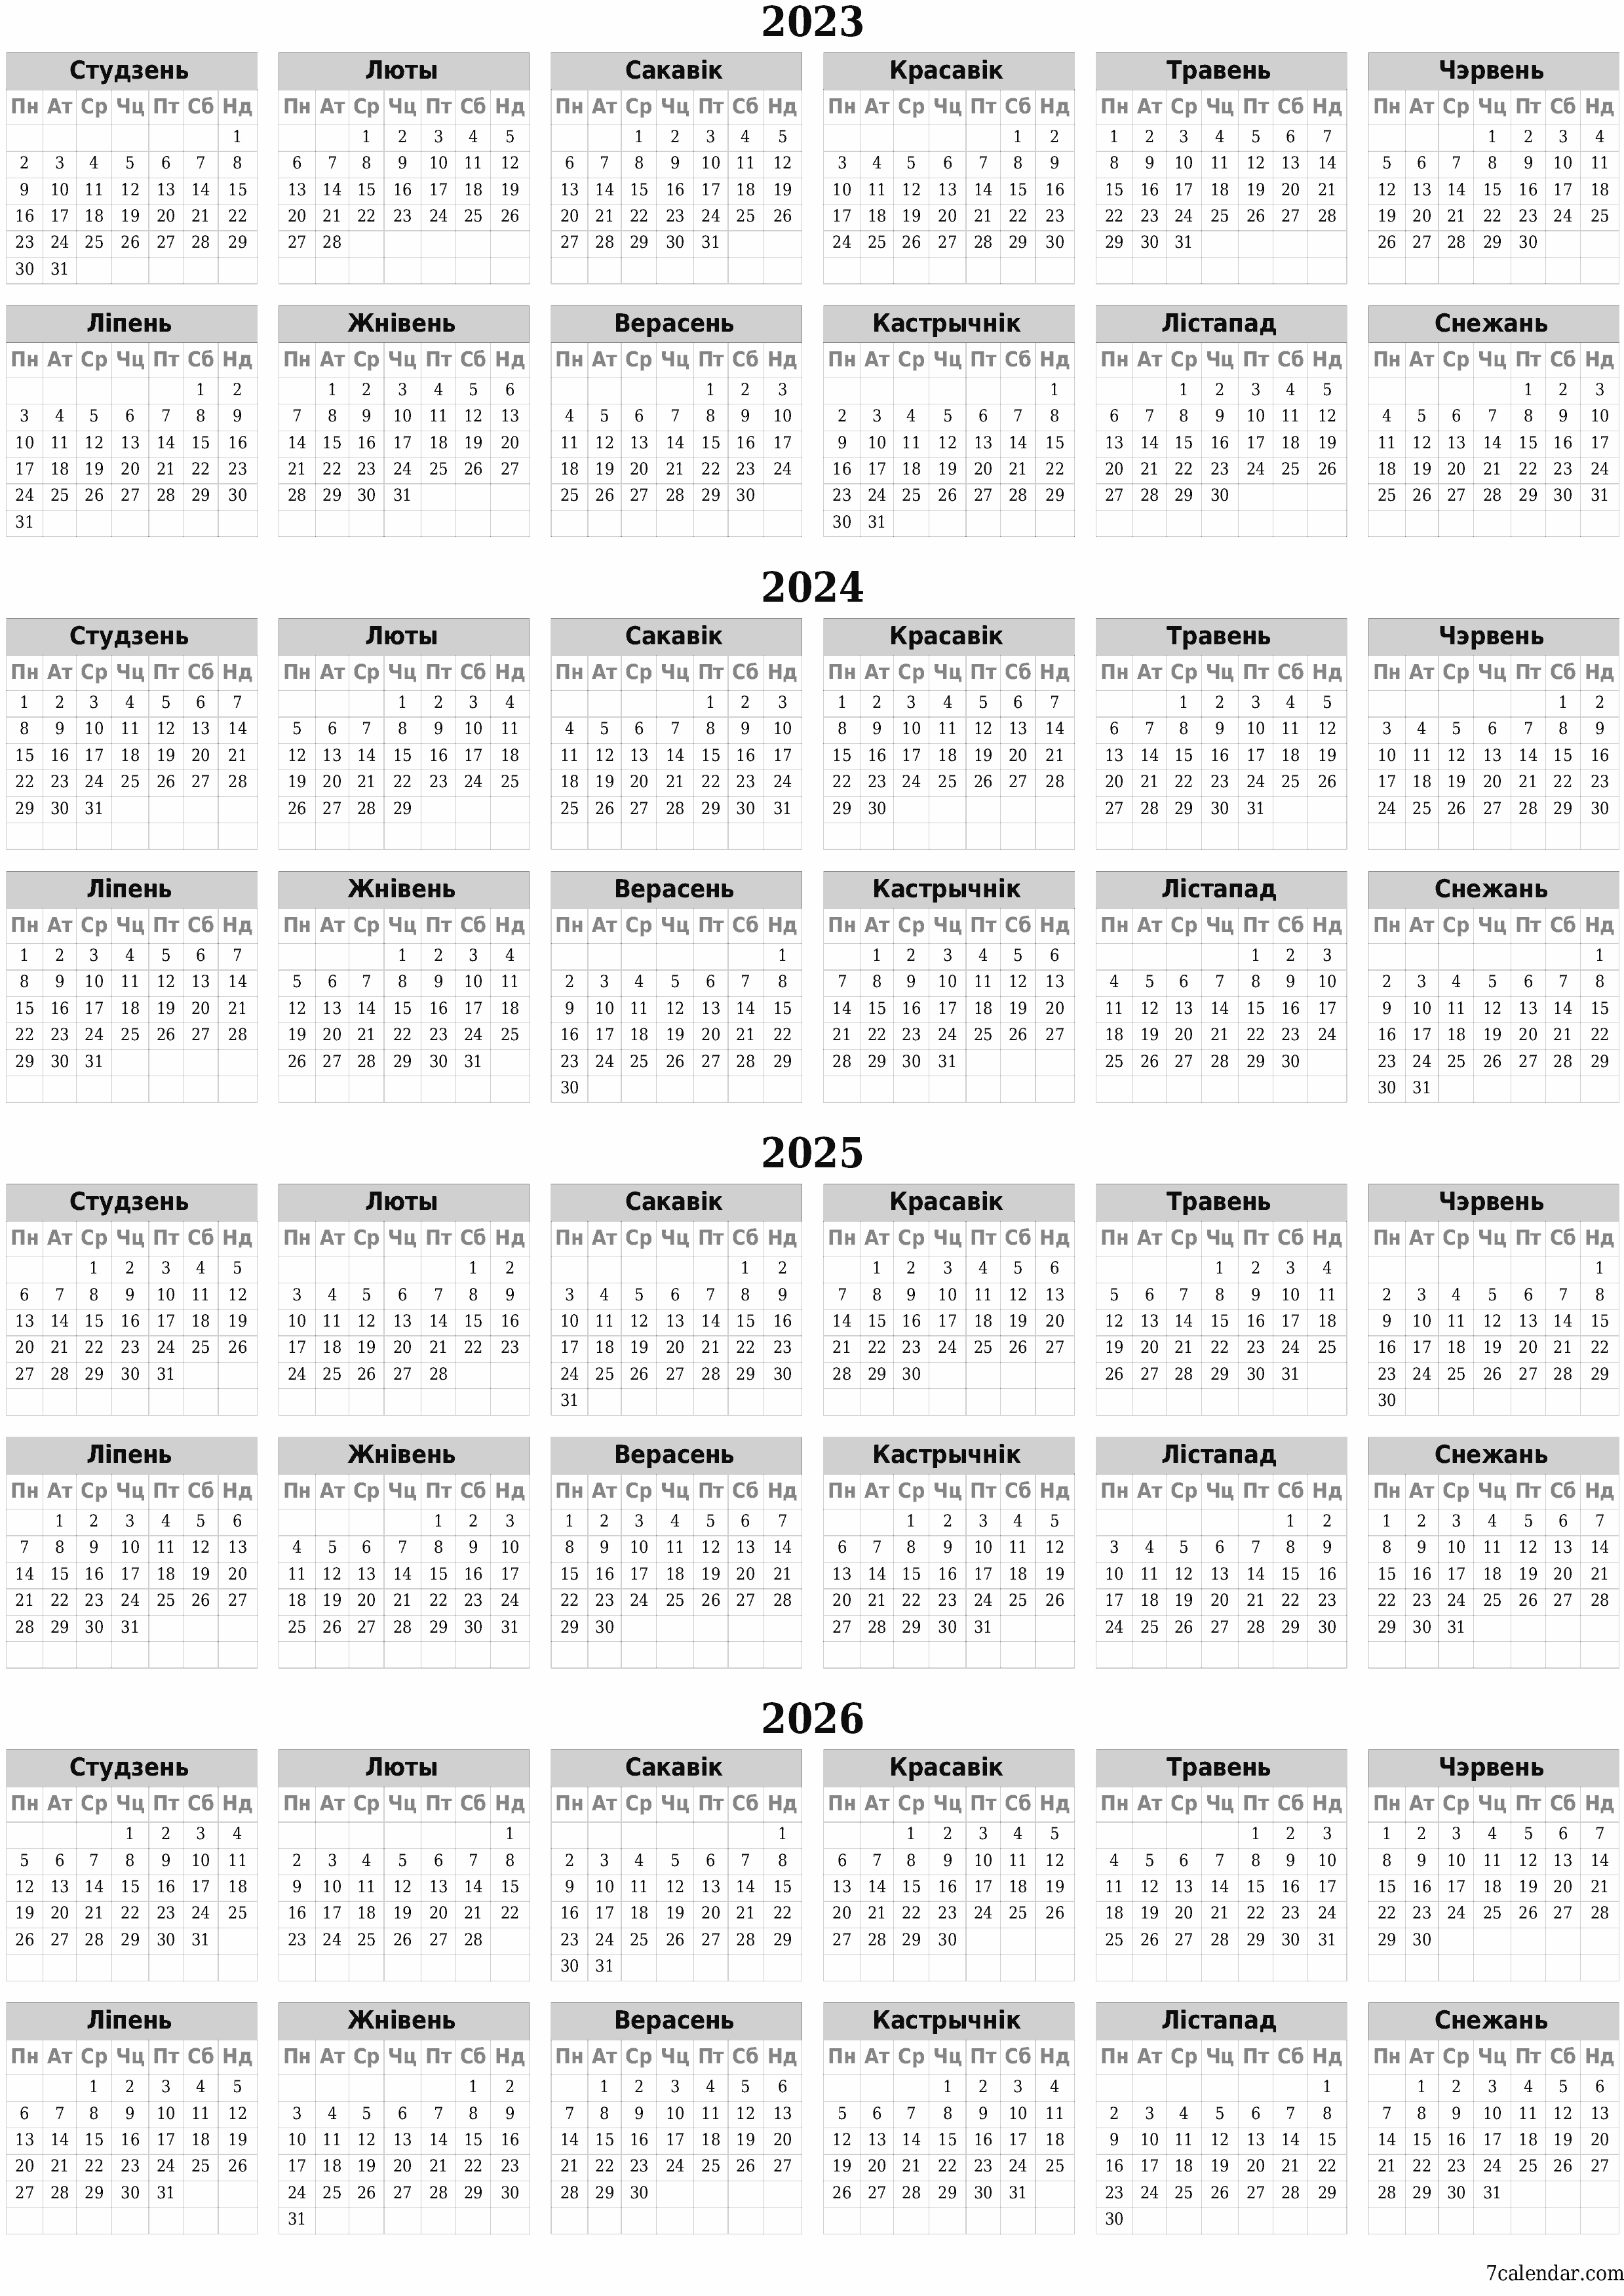  для друку насценны шаблон календара бясплатны вертыкальны Штогадовы каляндар Верасень (Вер) 2023